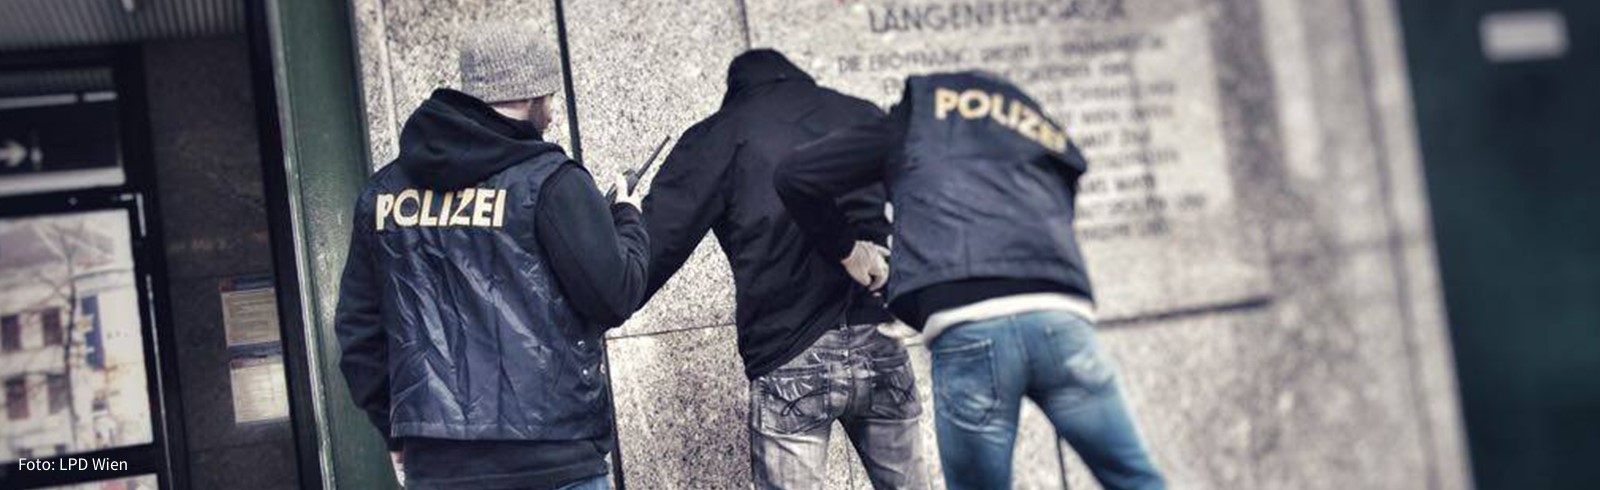 Teenie-Kiffer verletzen Polizisten